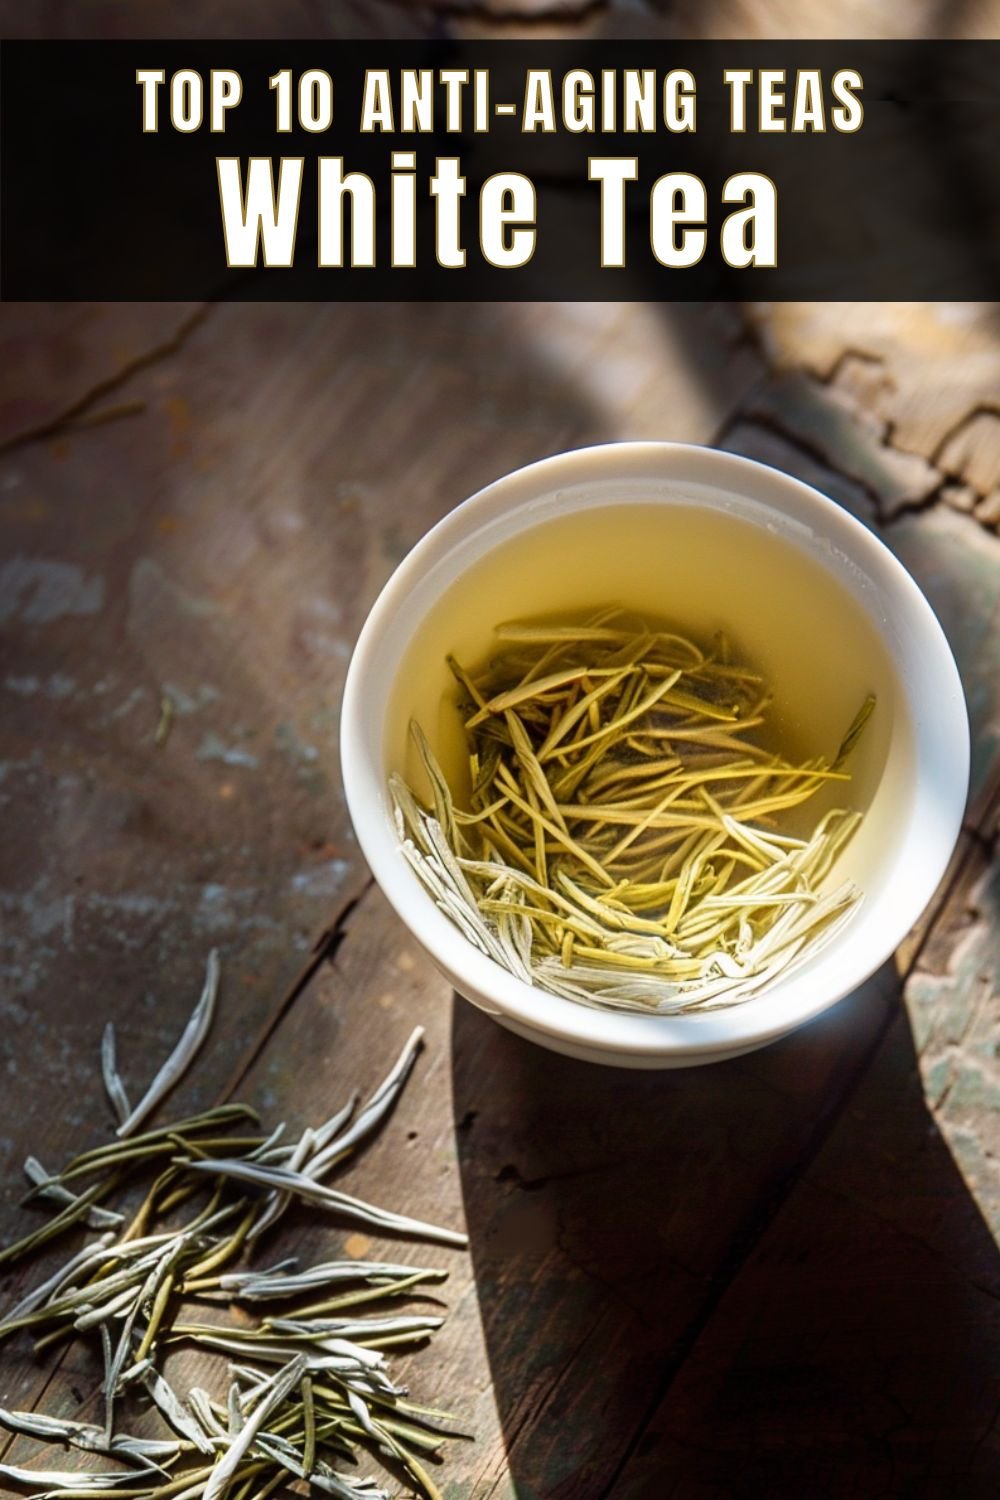 Top 10 Anti-Aging Teas White Tea